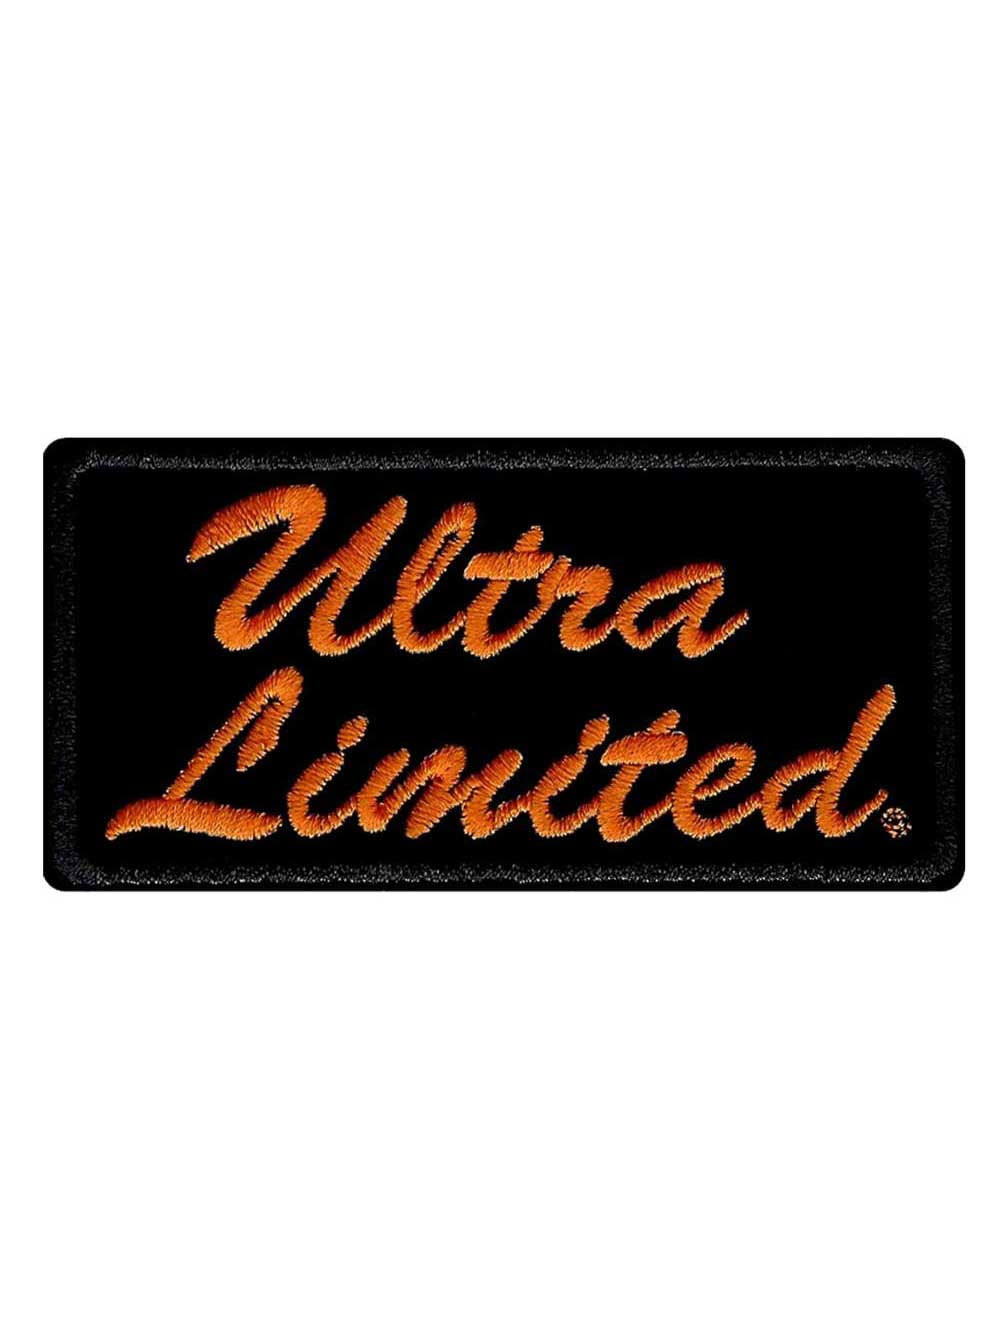 Harley Davidson Embroidered Ultra Limited Emblem Patch Sm 4 X 2 In Em1061642 Harley Davidson Walmart Com